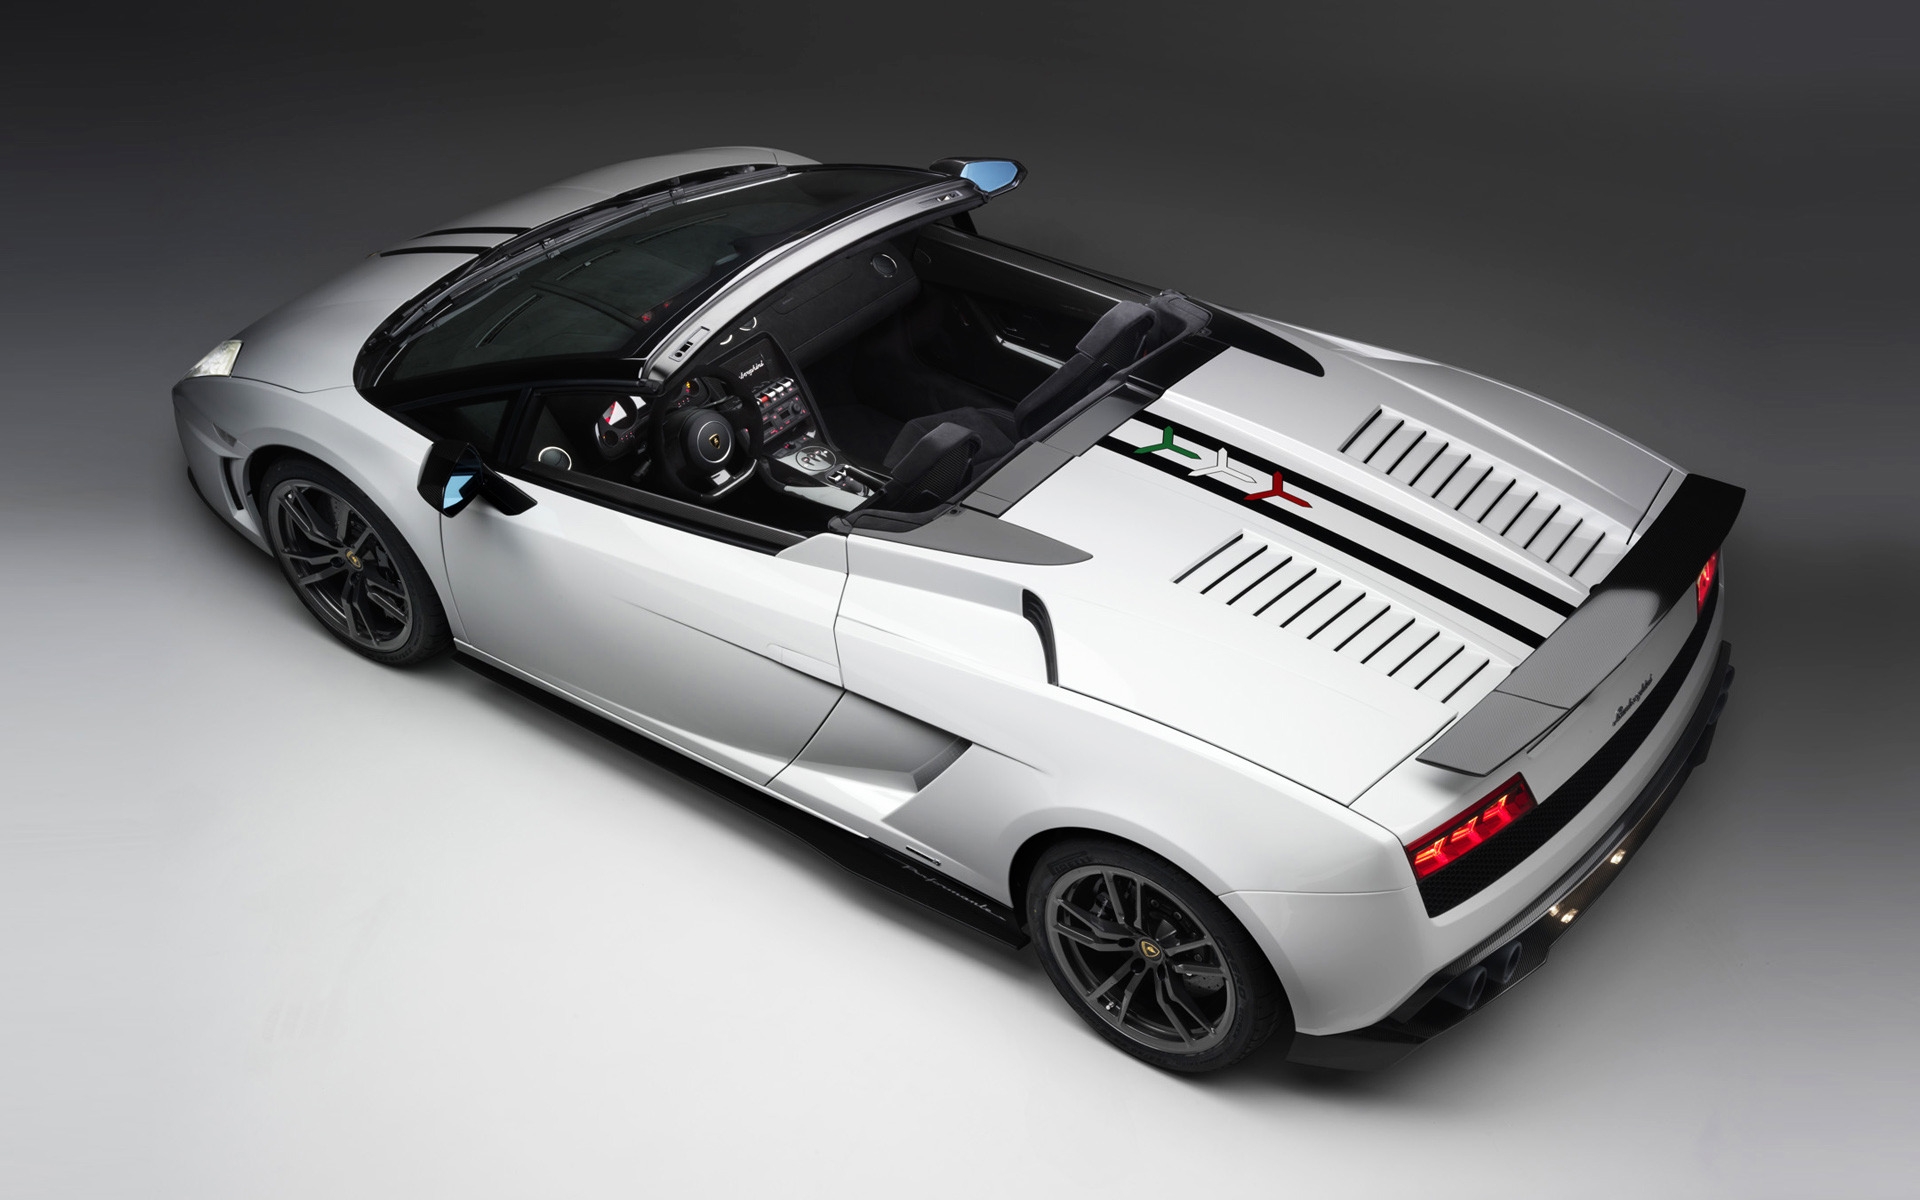 2011 Lamborghini Gallardo for 1920 x 1200 widescreen resolution